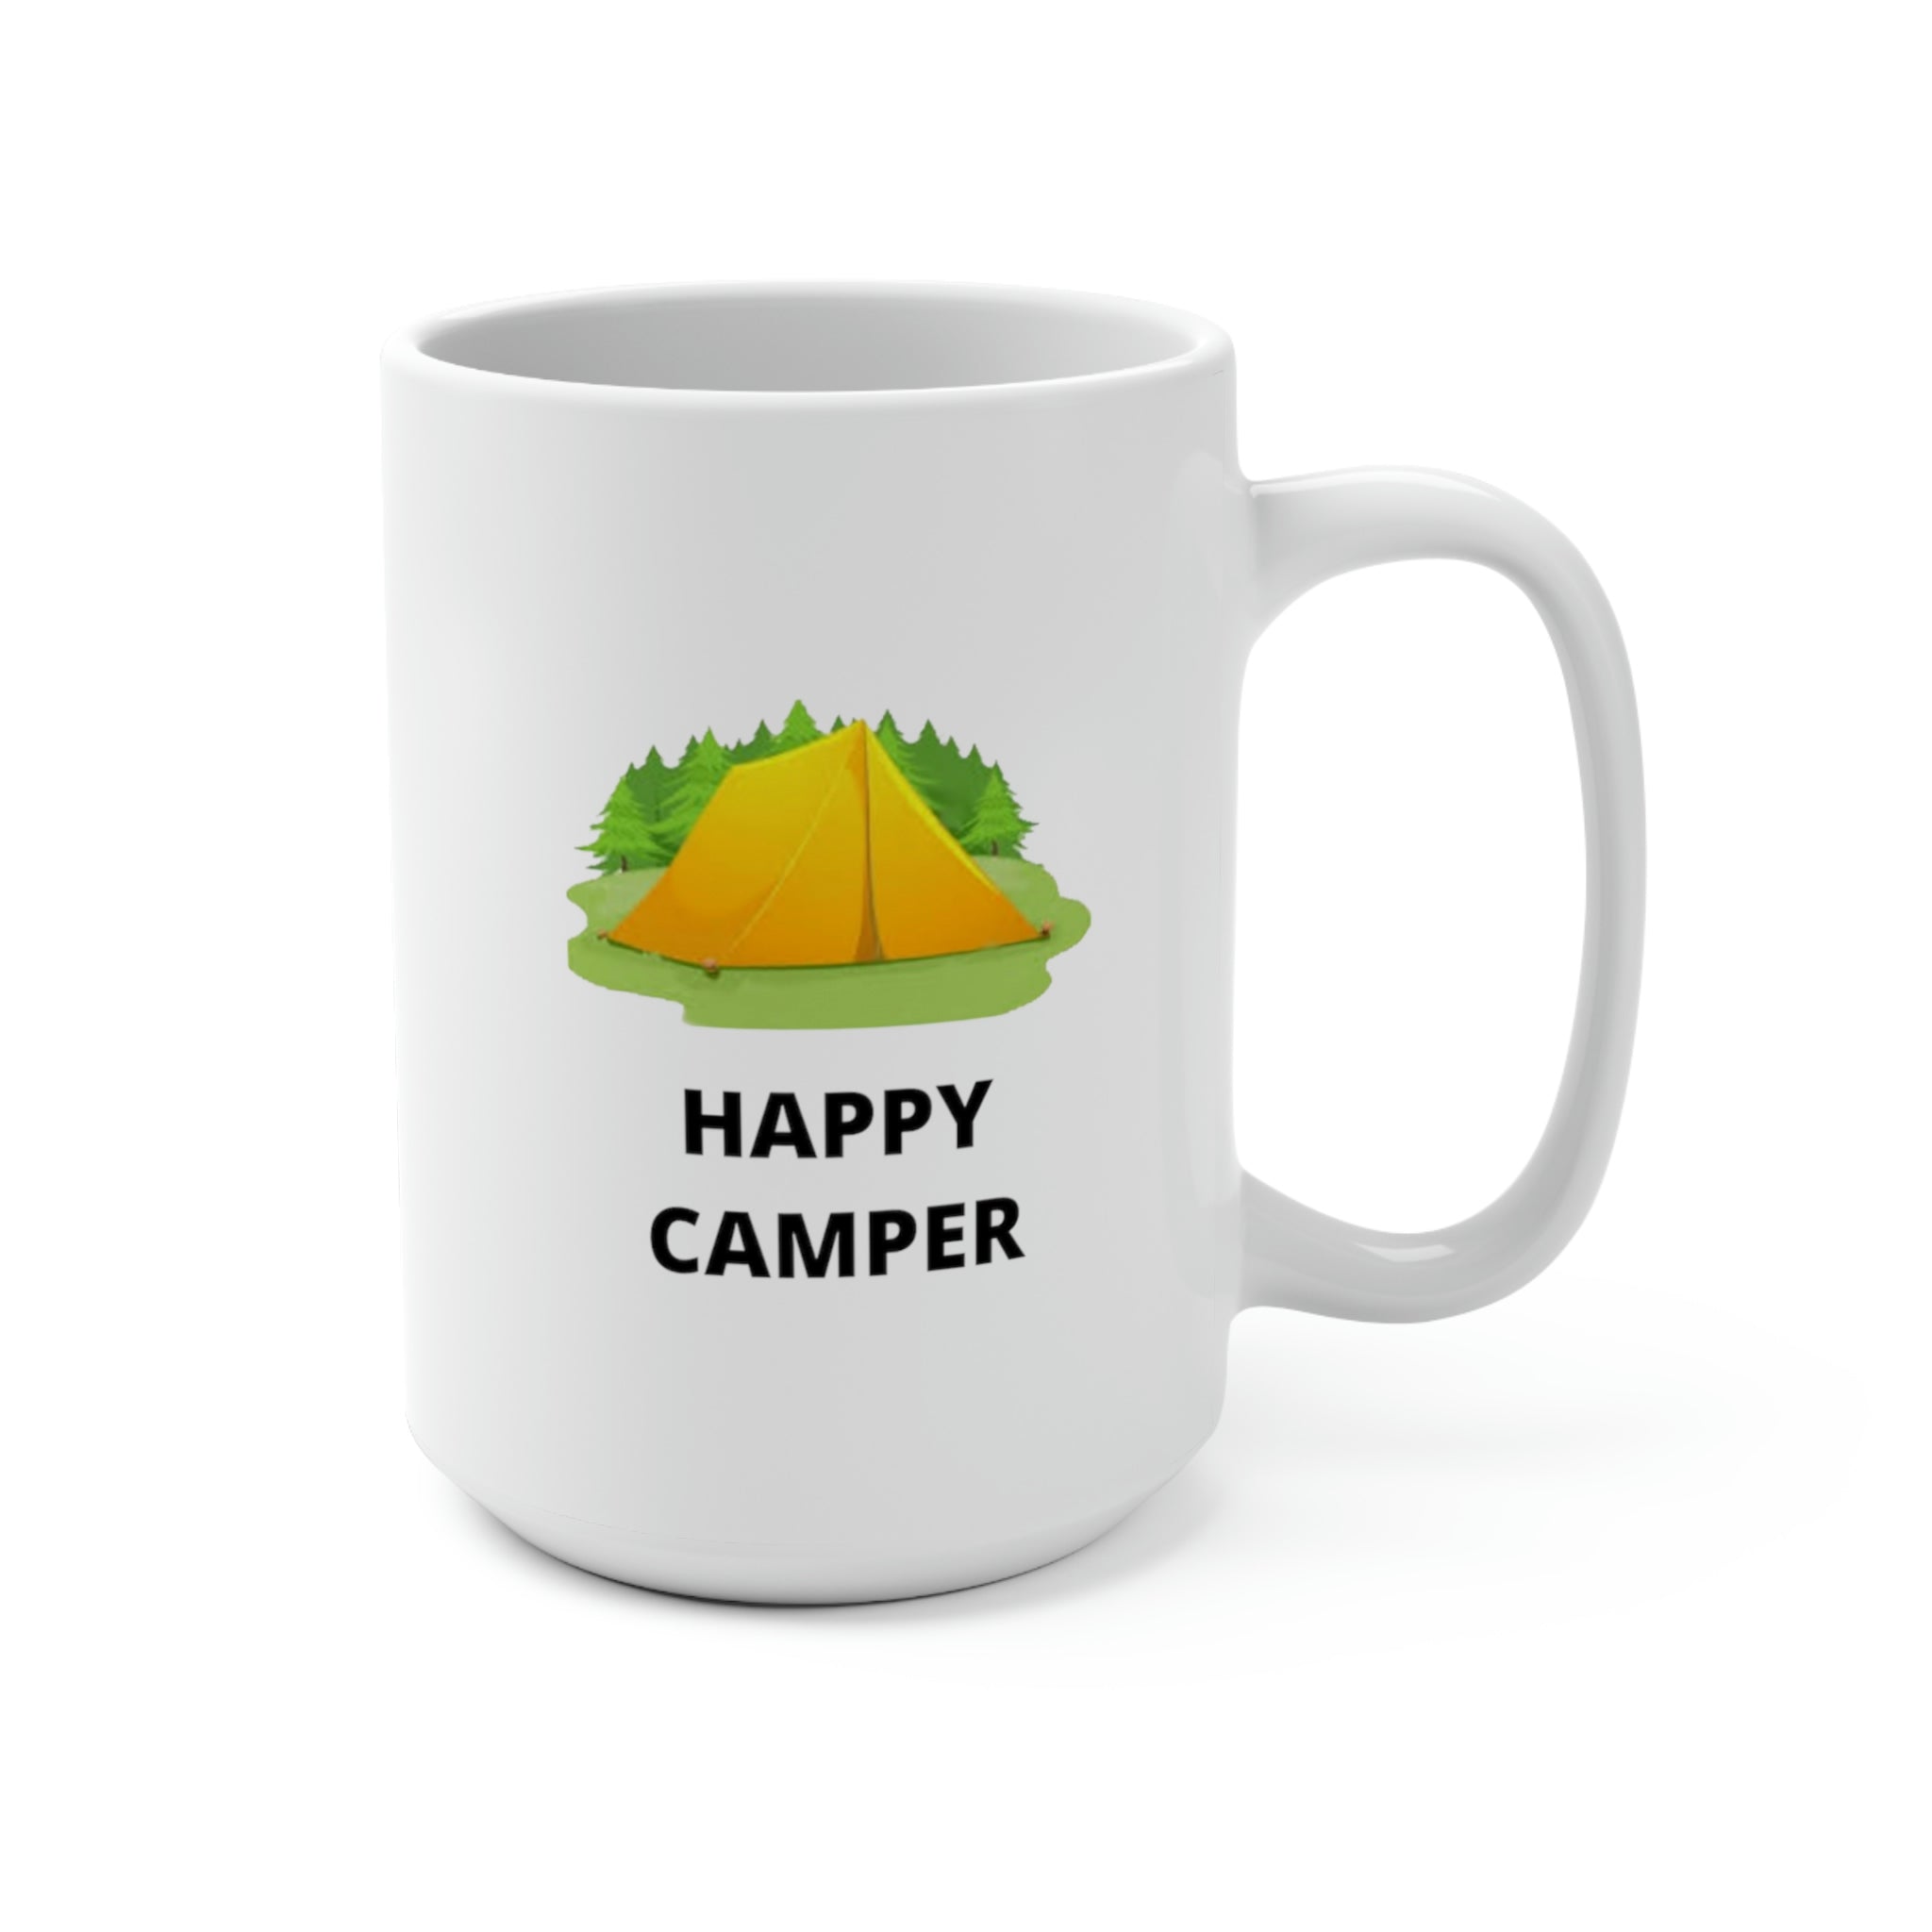 HAPPY CAMPER - Novelty Coffee Mug - 15oz